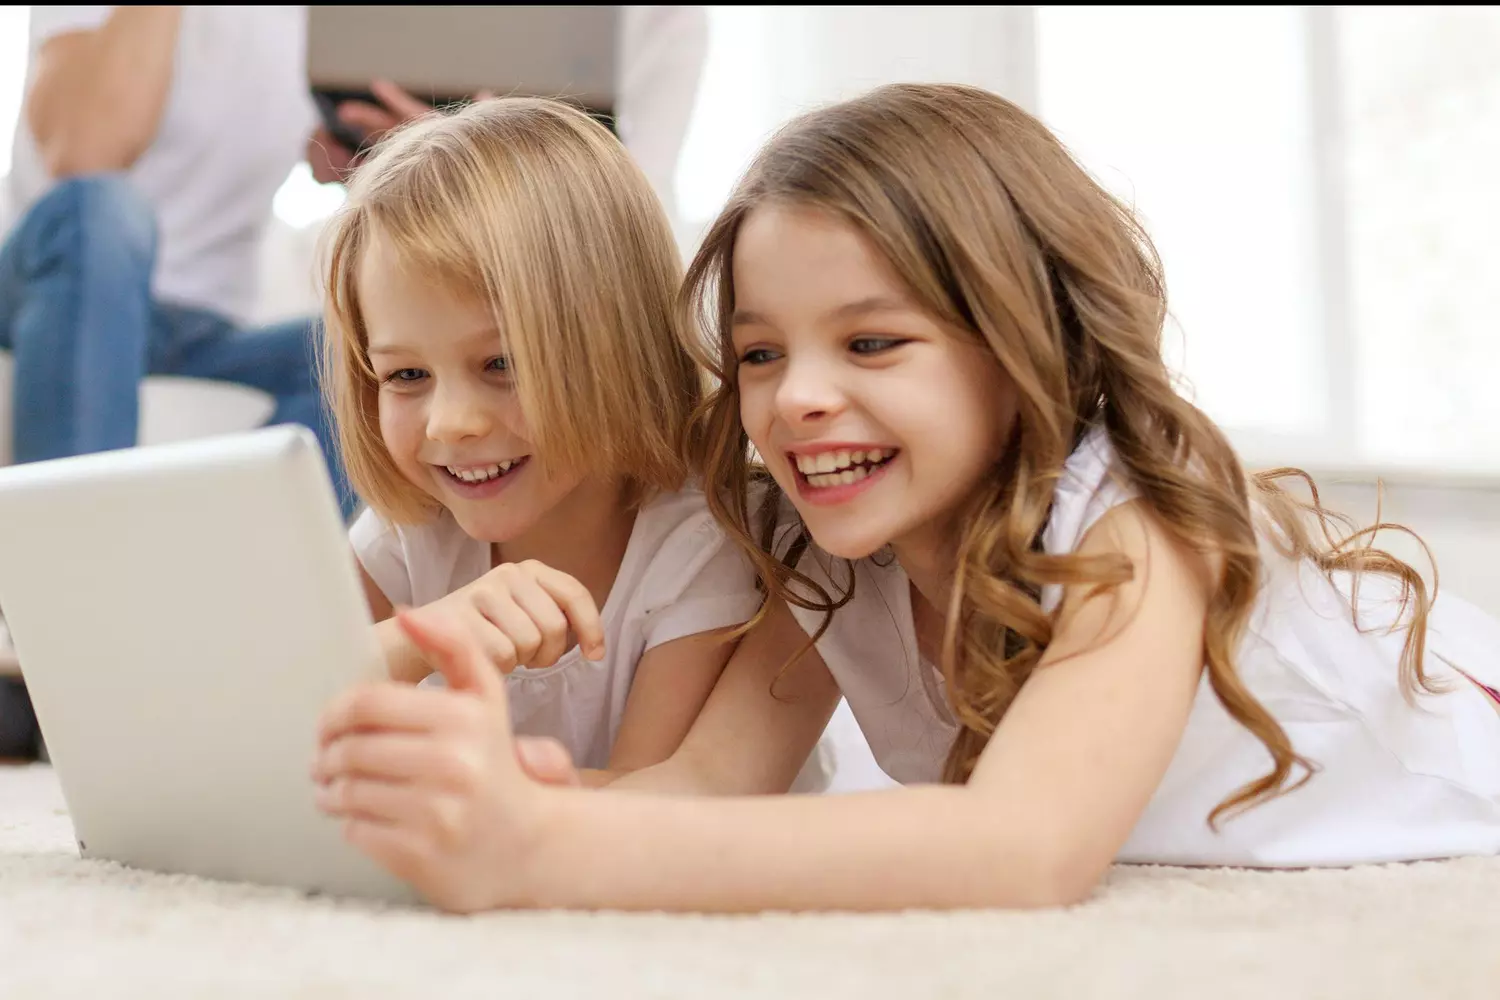 KURIO - La Tablette 7 Pouces Gulli 32Go pour Enfants - Android 13